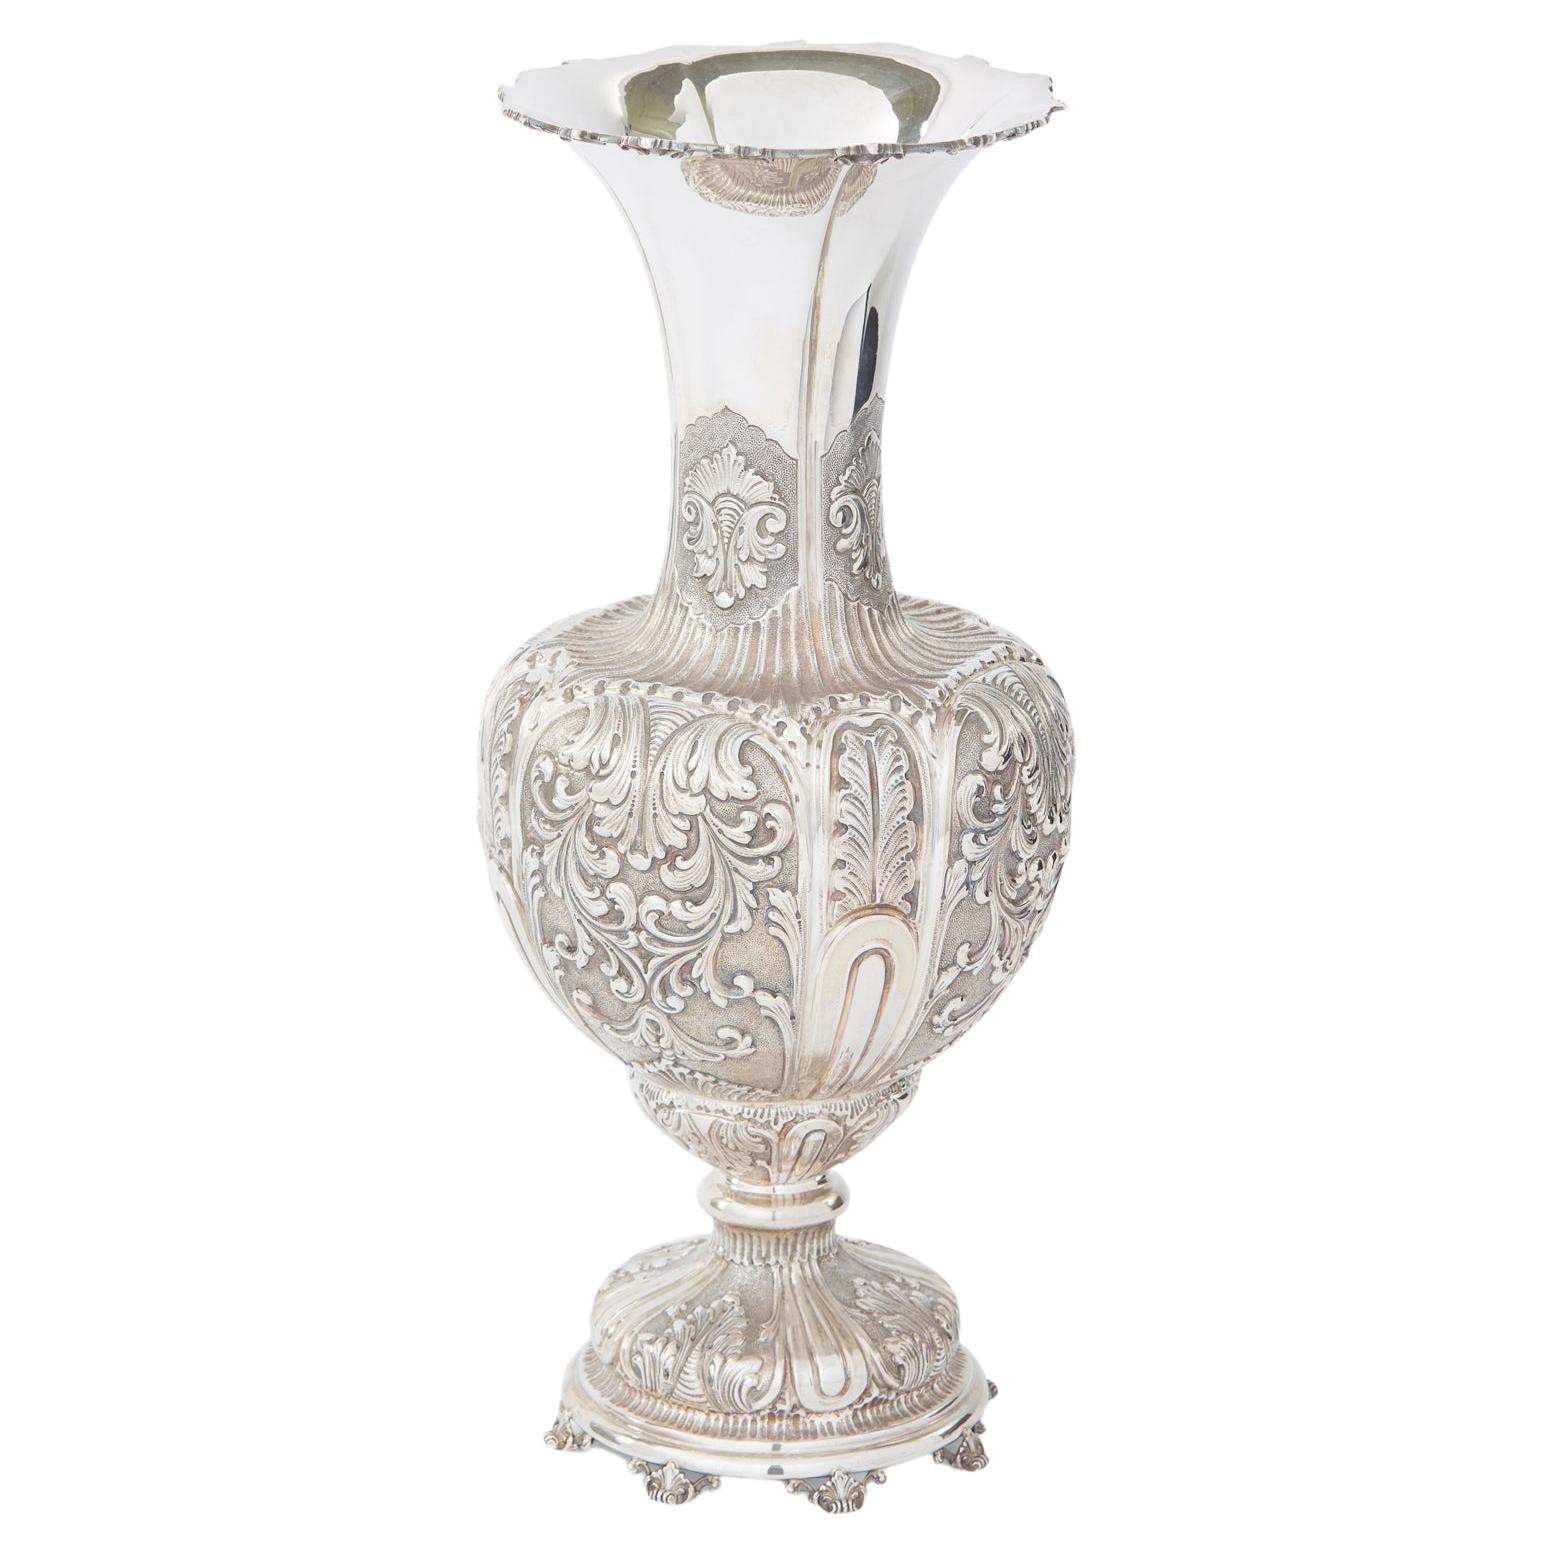 Très grande pièce décorative / Vase en argent sterling